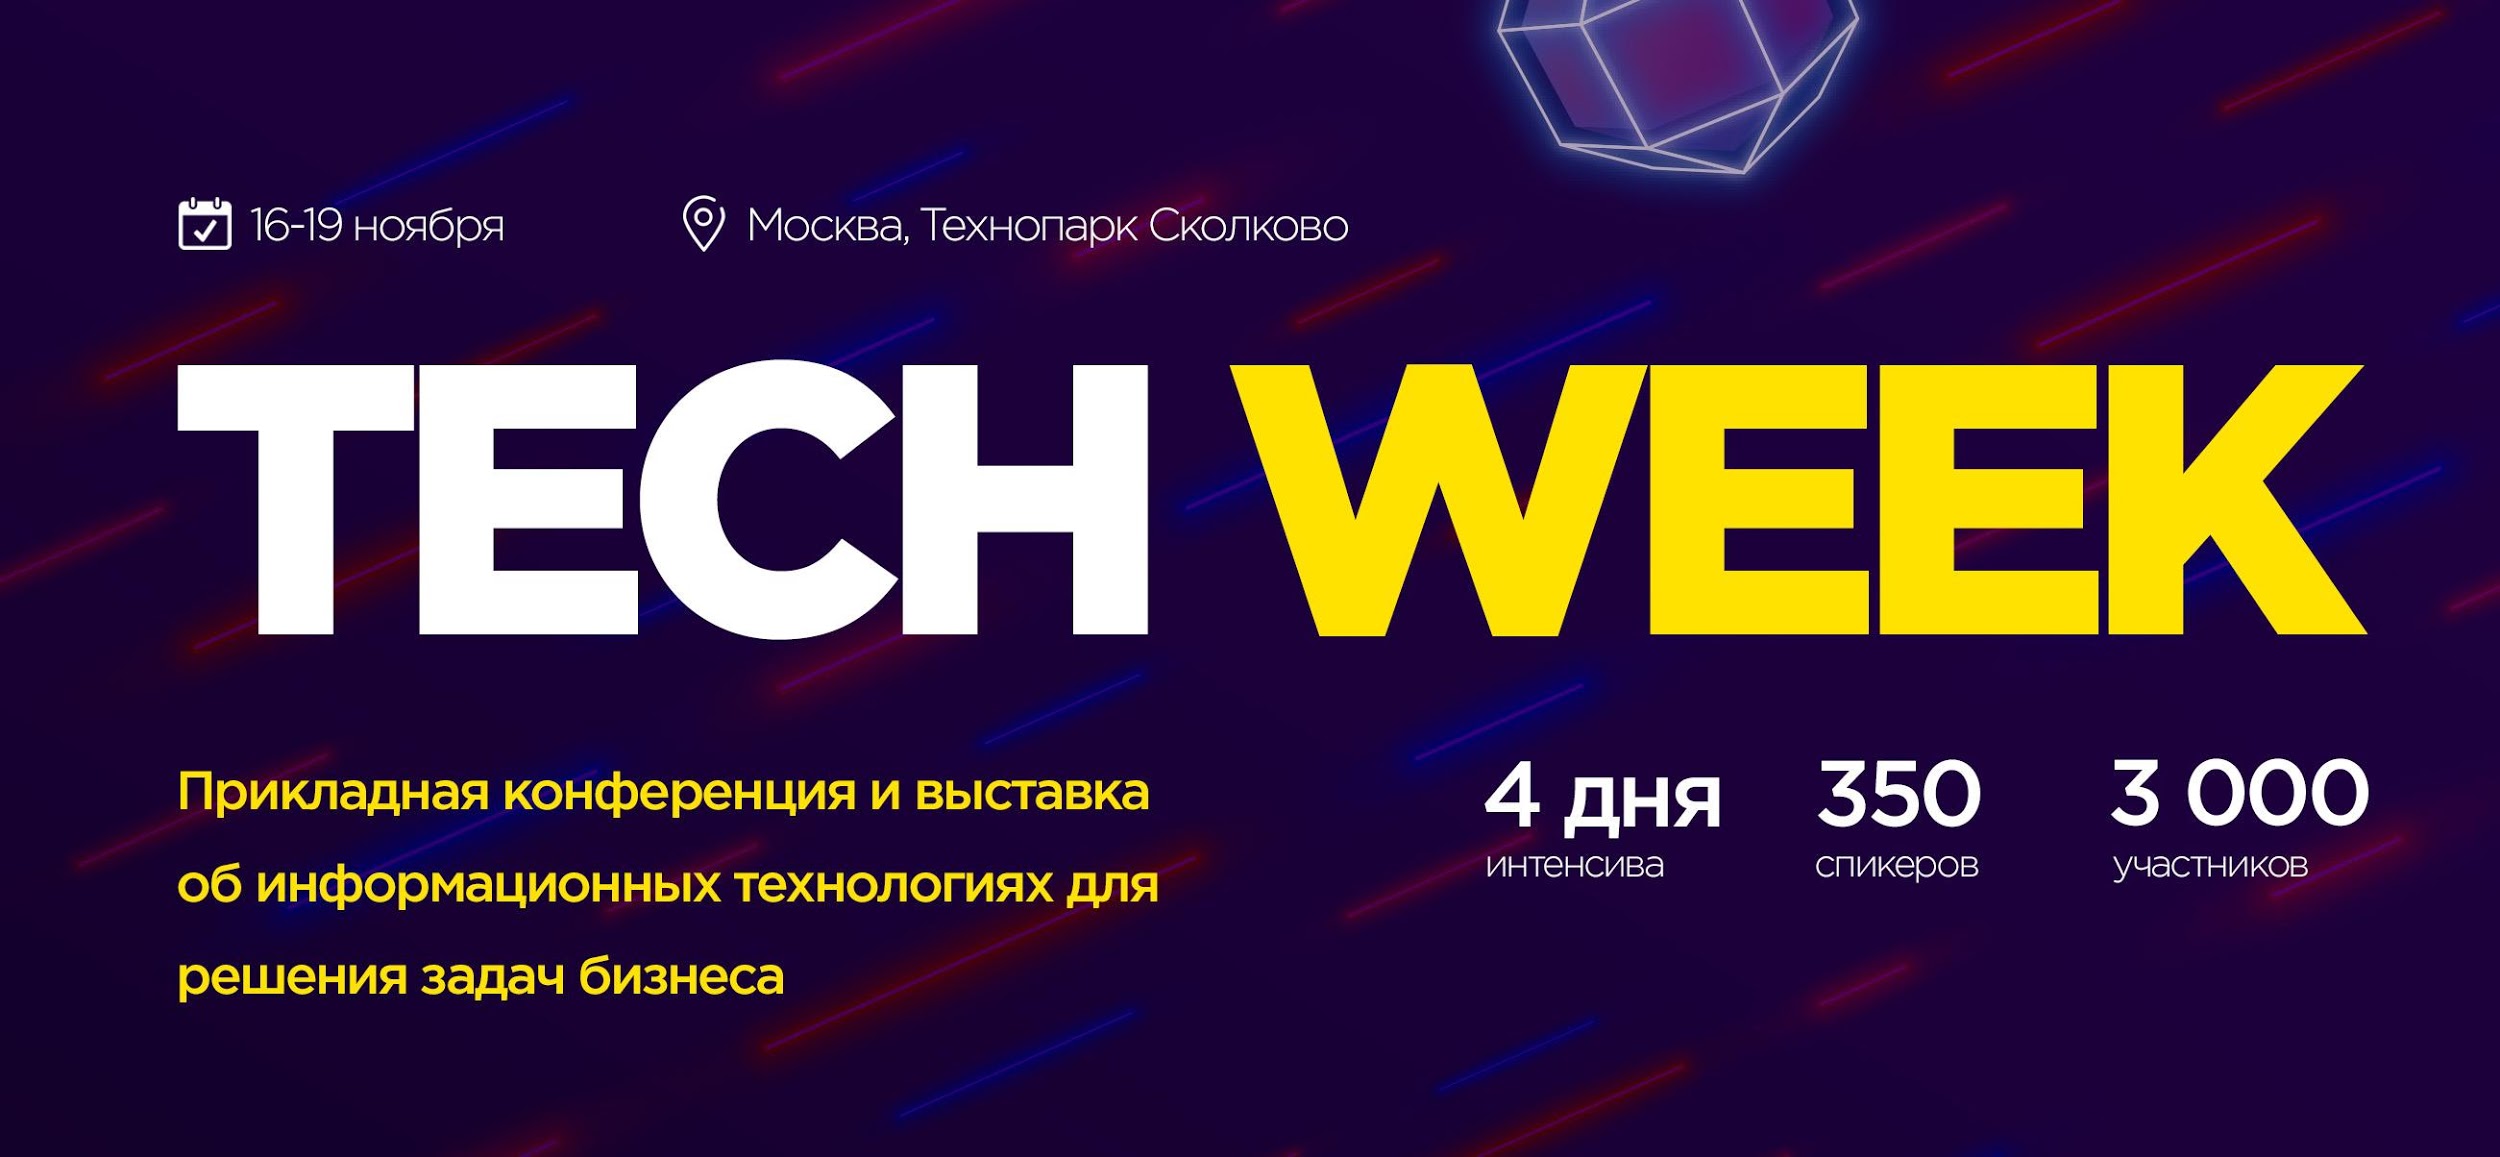 Tech Week 2020 — конференция в Москве с 16 по 19 ноября